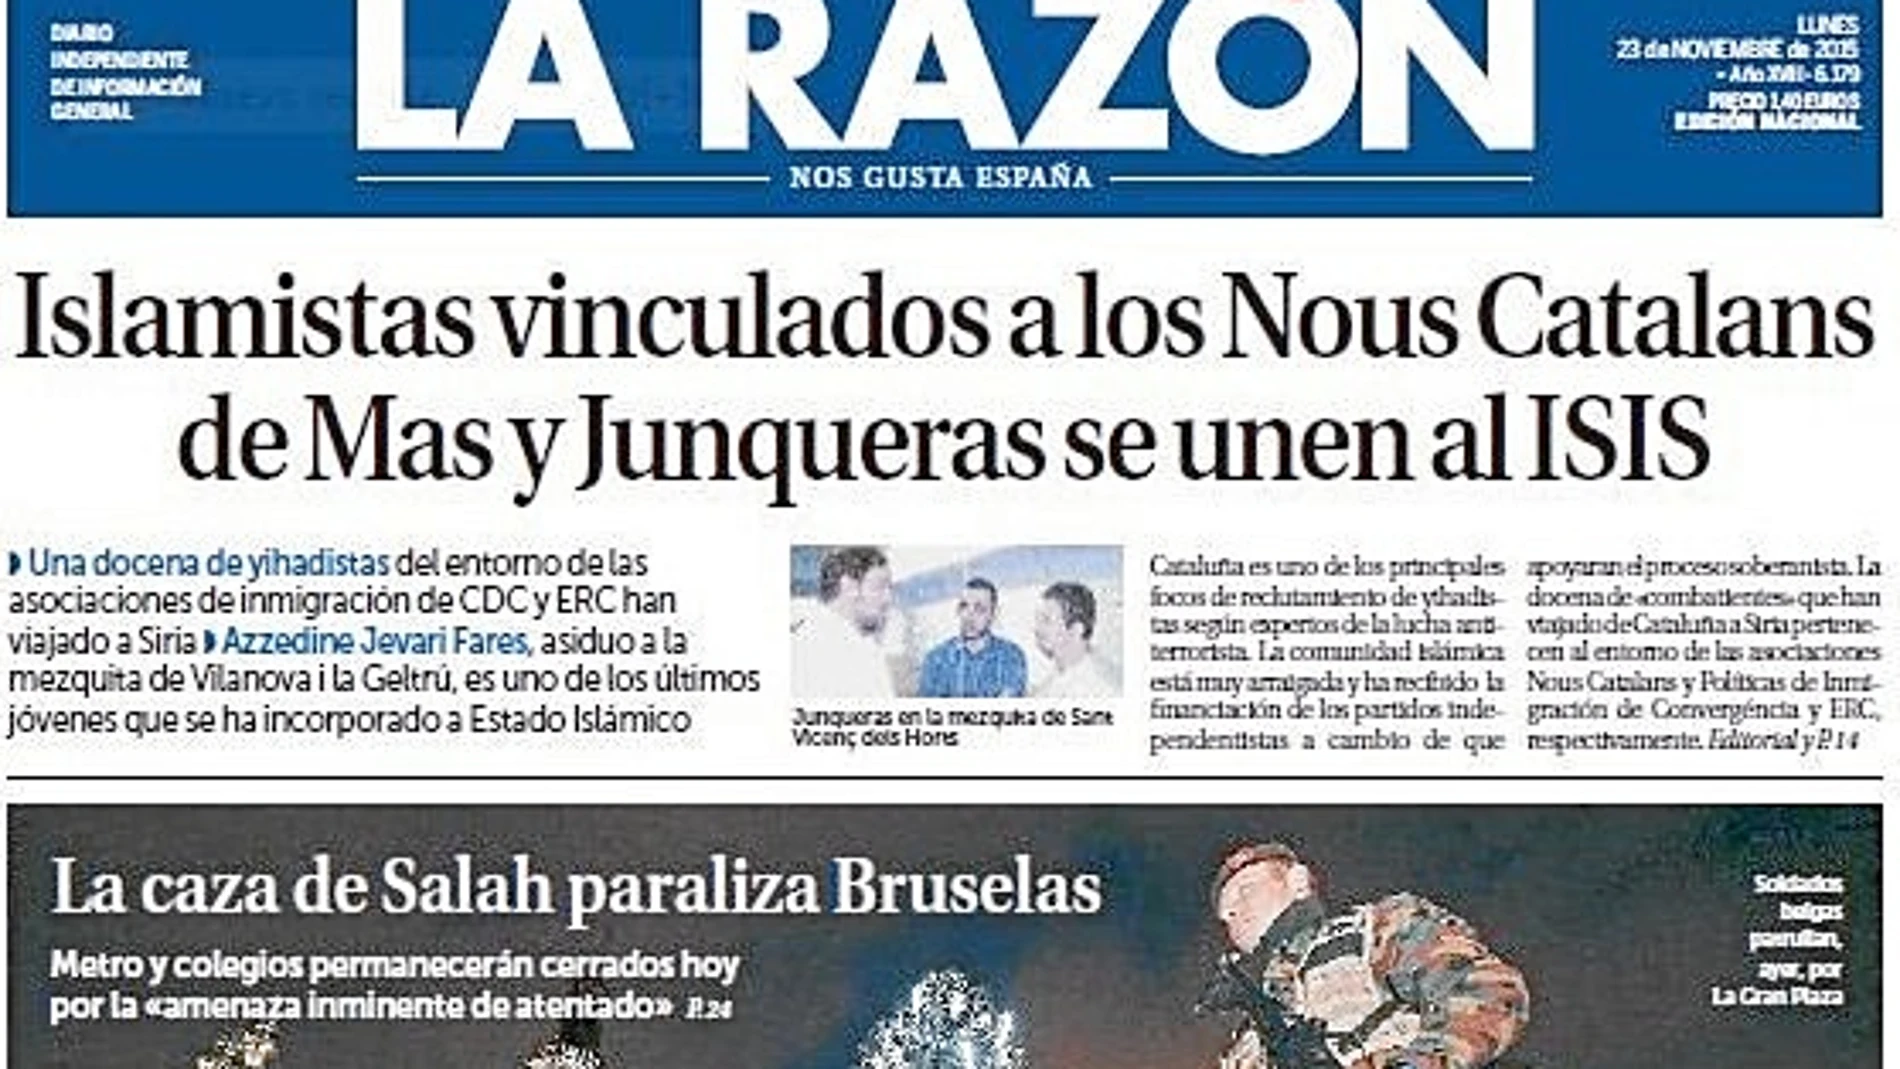 El ministro del Interior confirmó que Nous Catalans puede ser utilizada por salafistas